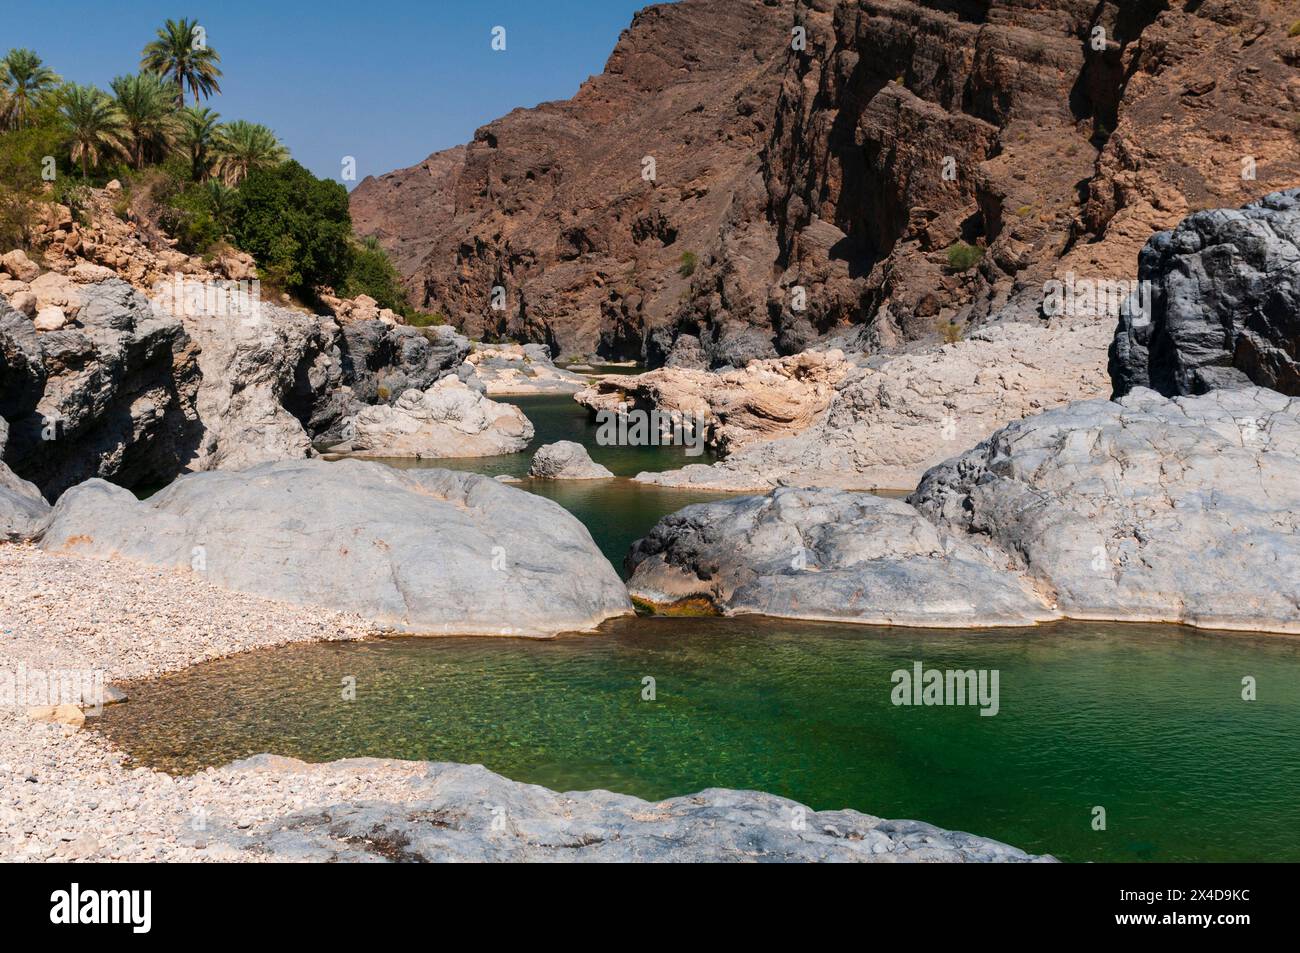 Une piscine naturelle à Wadi Al Arbeieen, au pied des montagnes du désert.Wadi Al Arbeieen, Oman. Banque D'Images